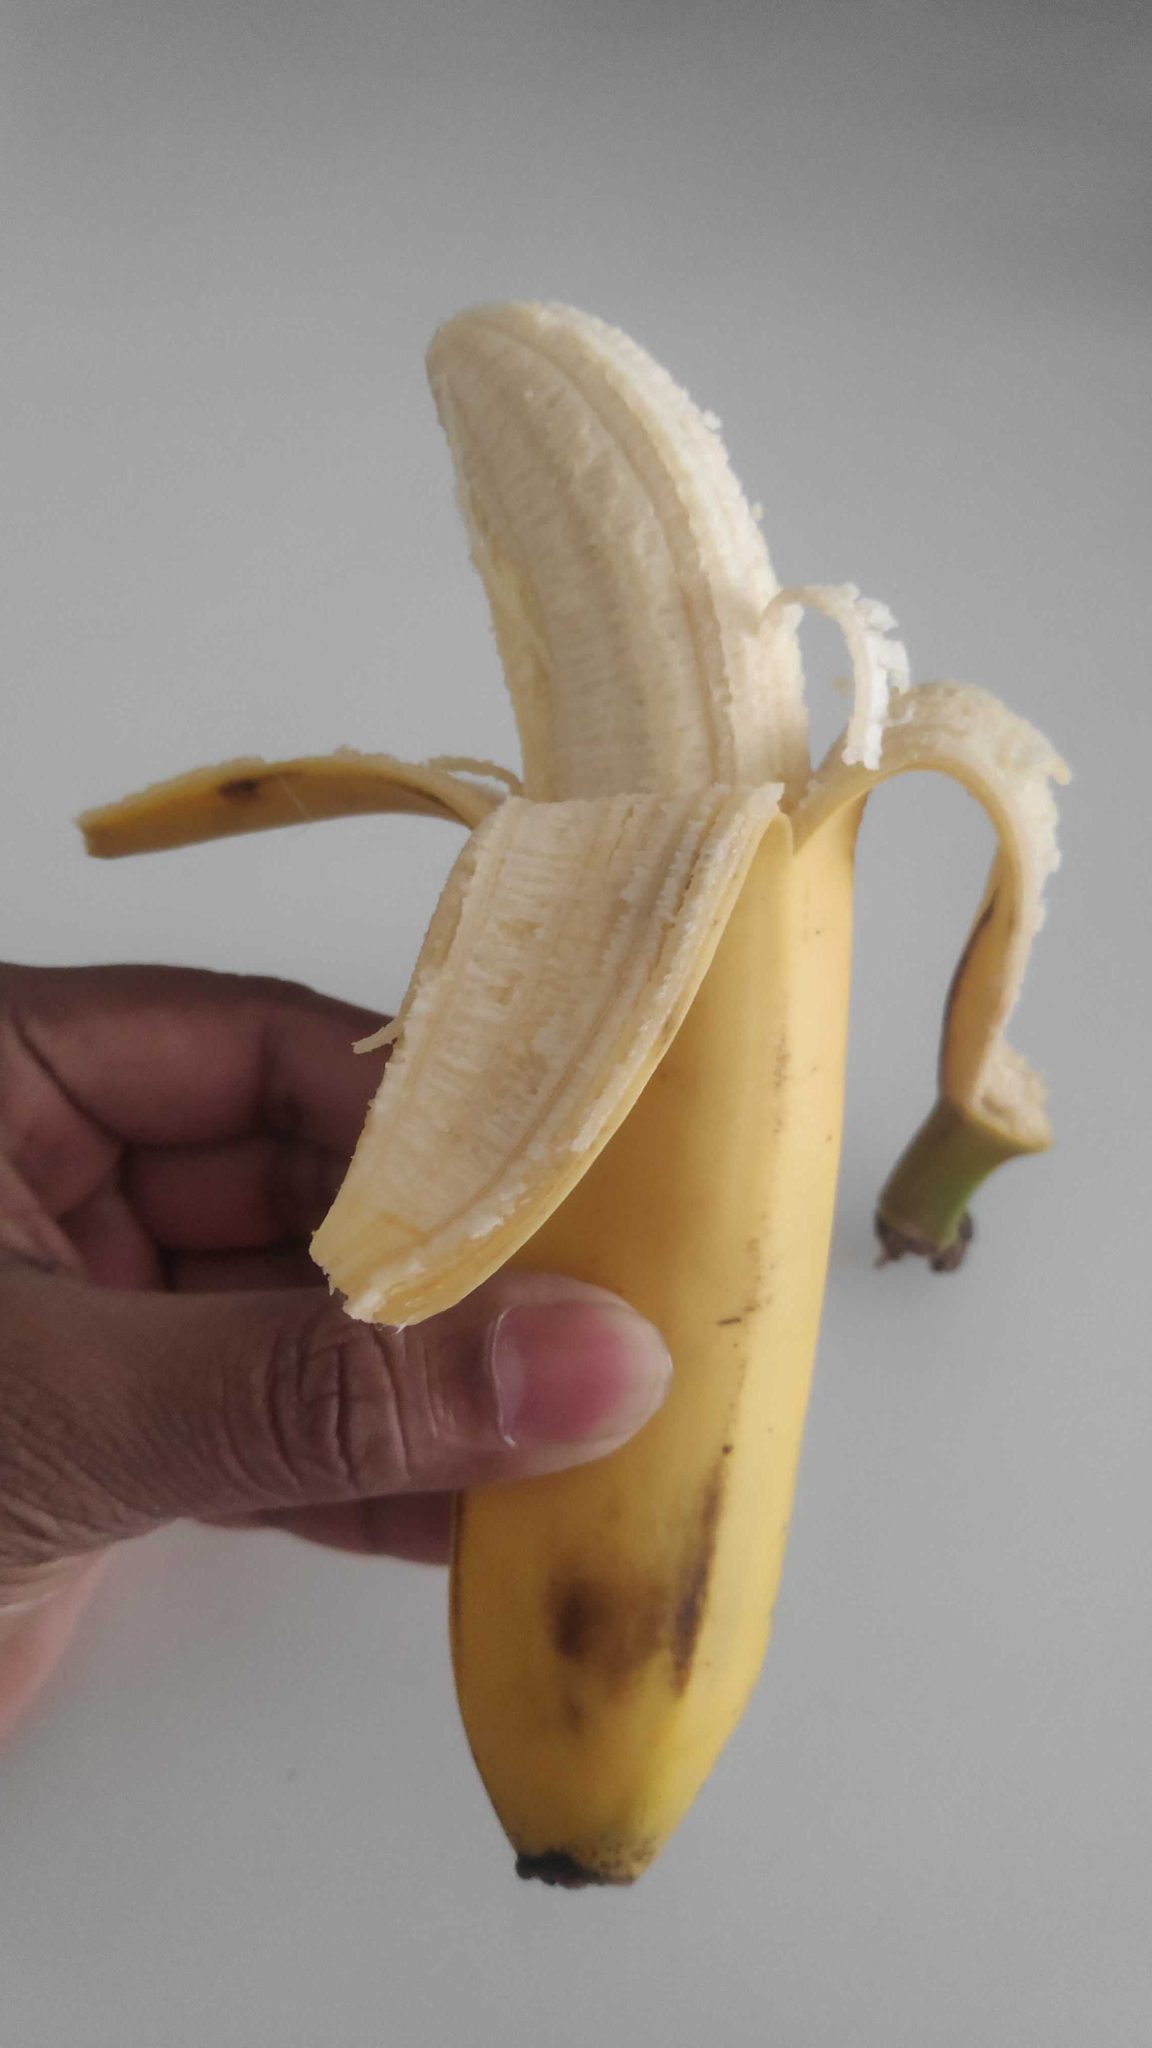 Ready to eat banana